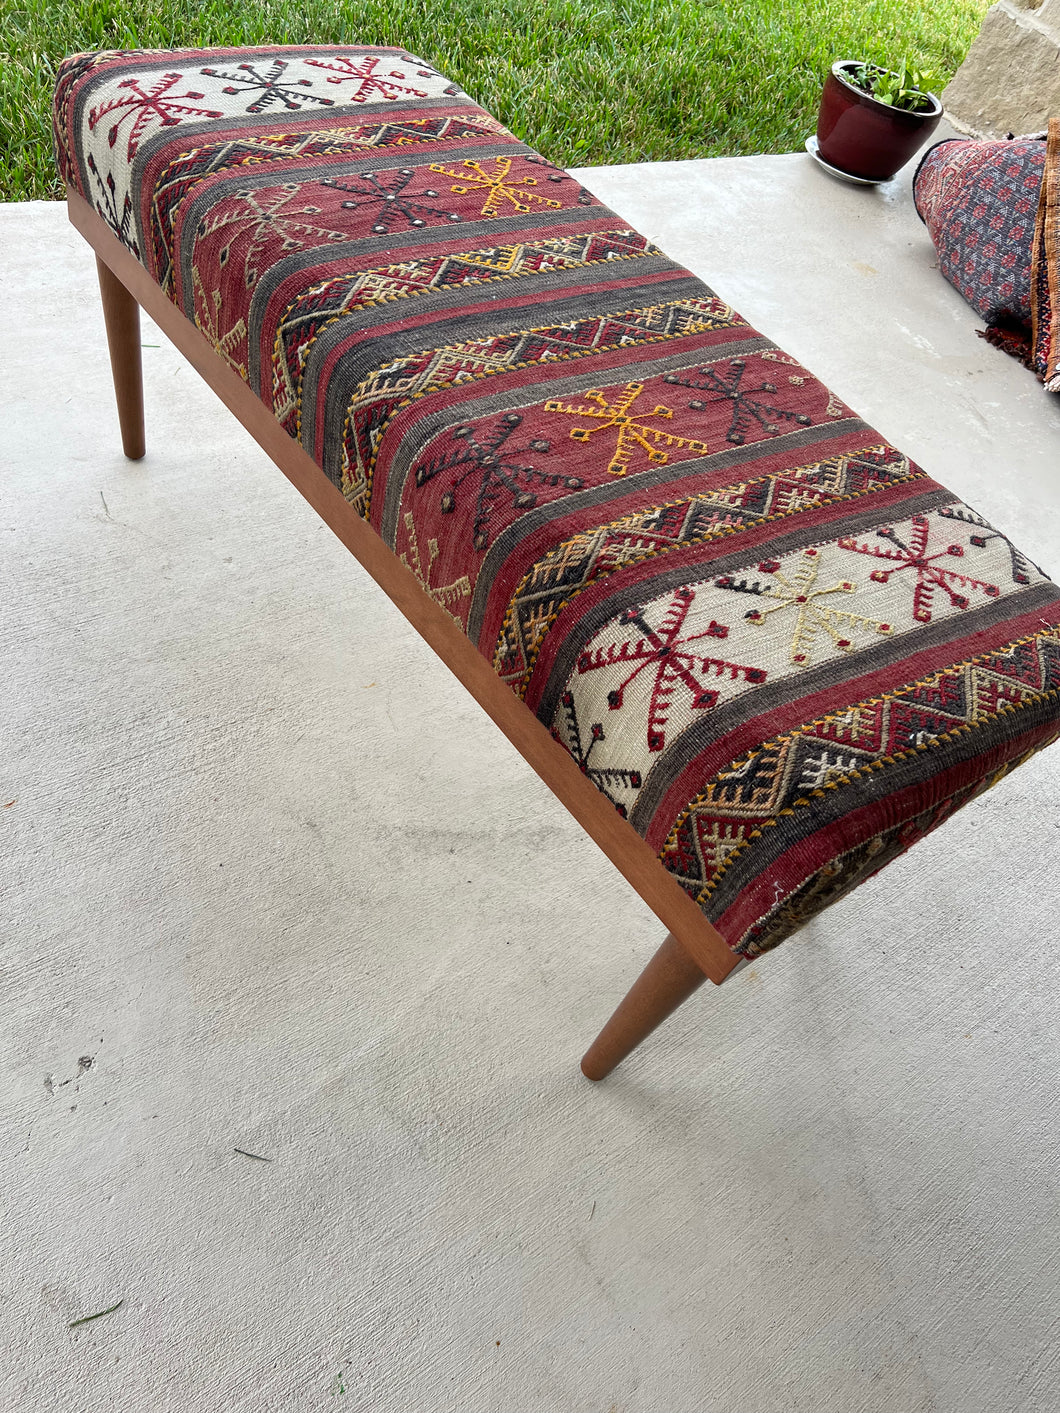 Handmade bench/ ottoman (18x43, height 20”)